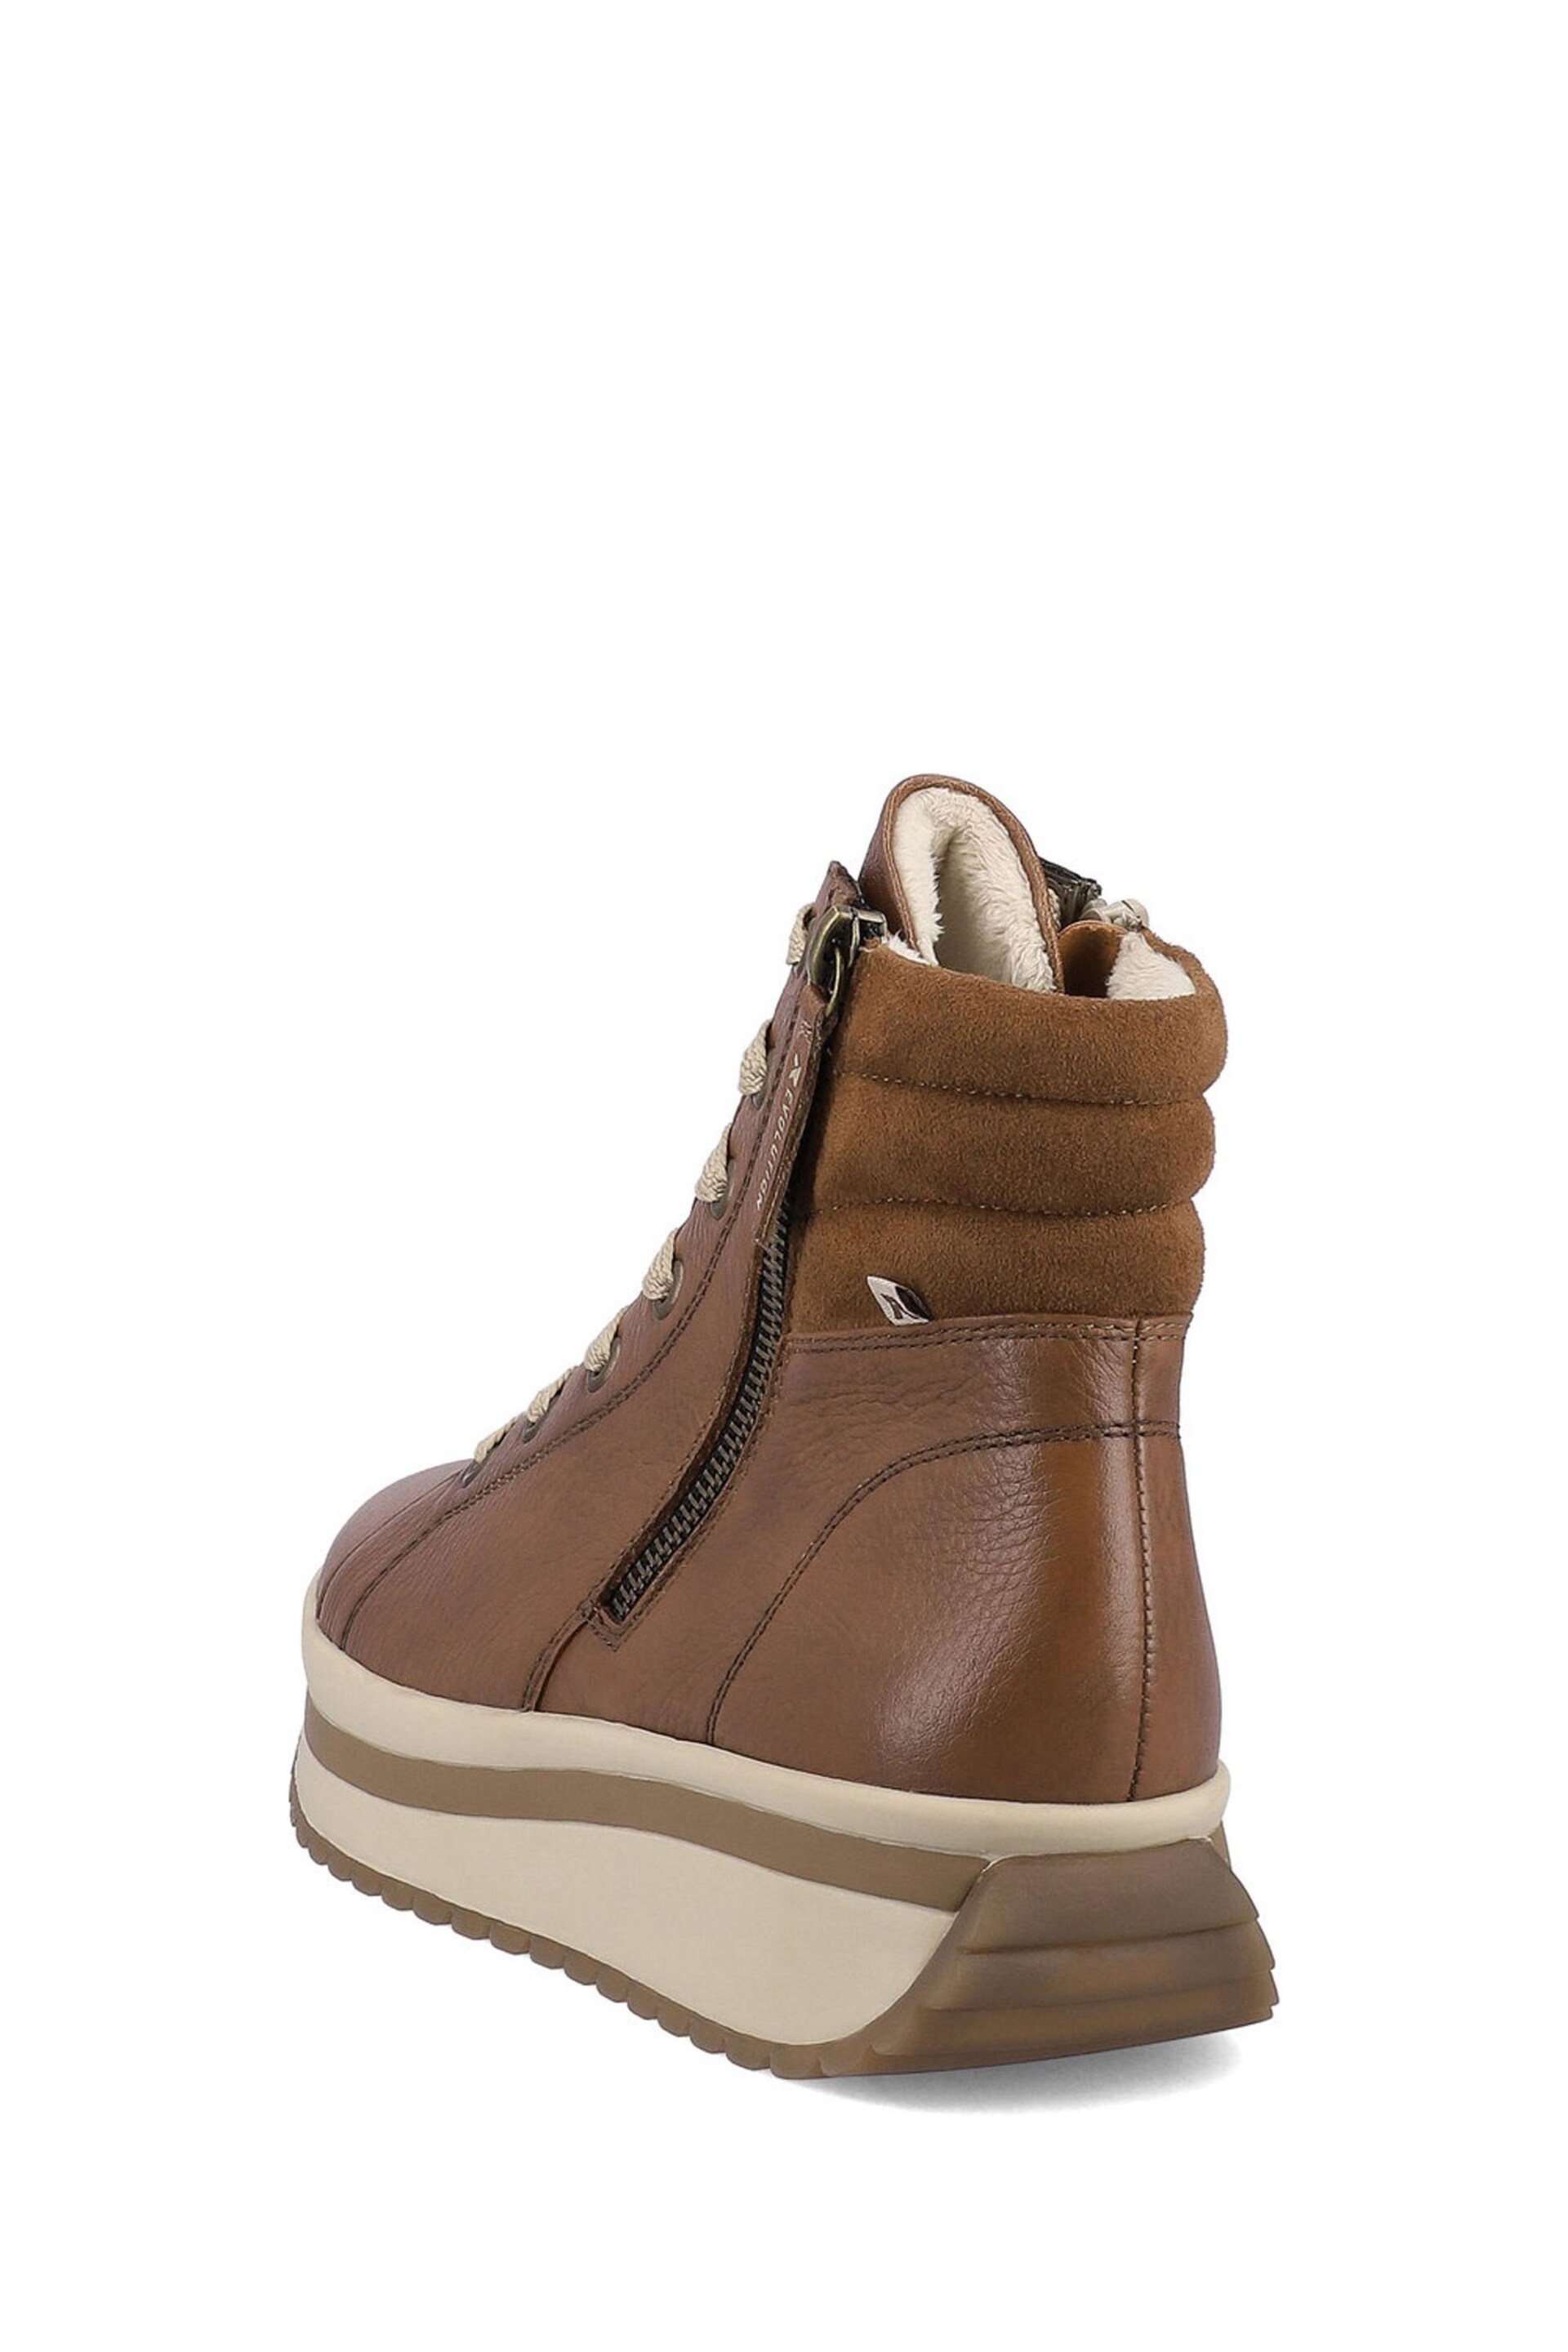 Rieker Womens Evolution Zipper Brown Boots - Image 4 of 11